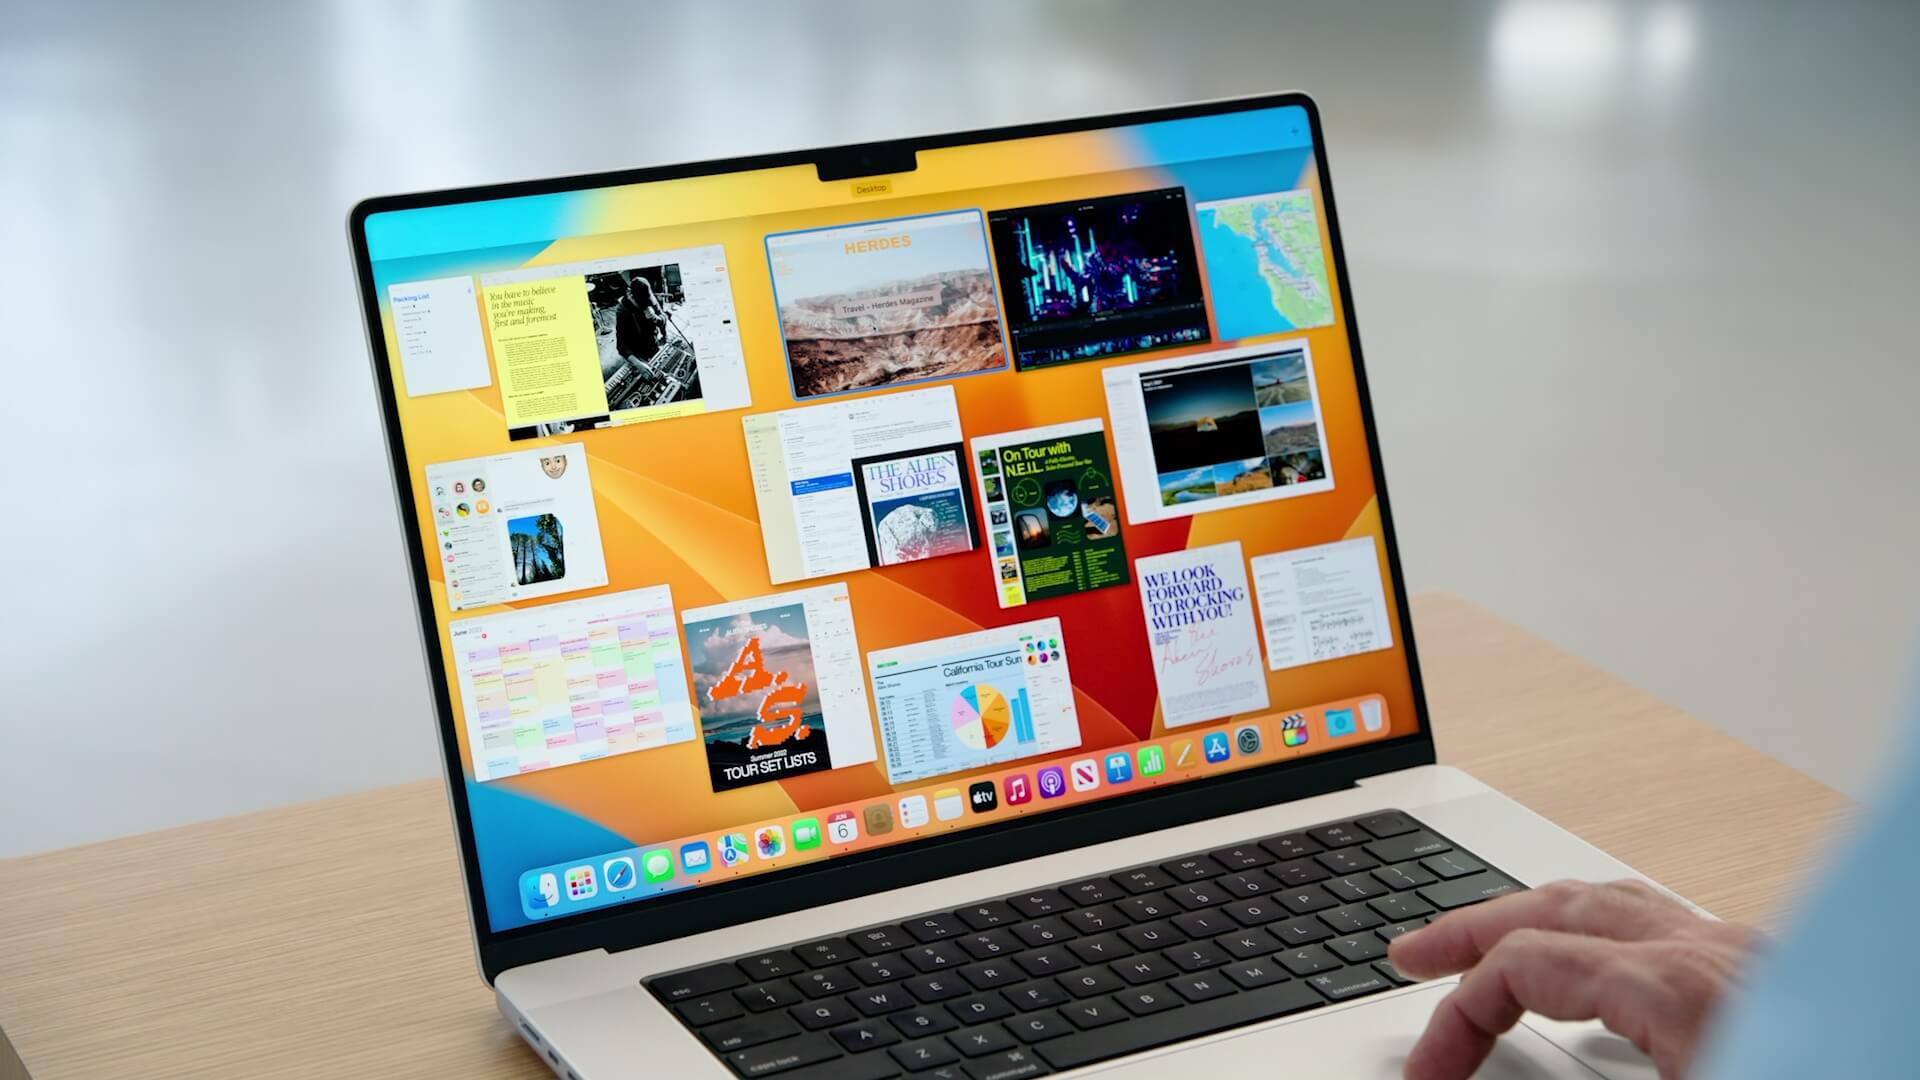 Bạn muốn khám phá tính năng mới của hệ điều hành macOS Ventura của Apple? Hãy xem giới thiệu đầy thú vị về macOS Ventura. Bạn sẽ được trải nghiệm trực quan về giao diện của hệ điều hành mới nhất và thấy rõ những tính năng tuyệt vời mà nó mang lại.